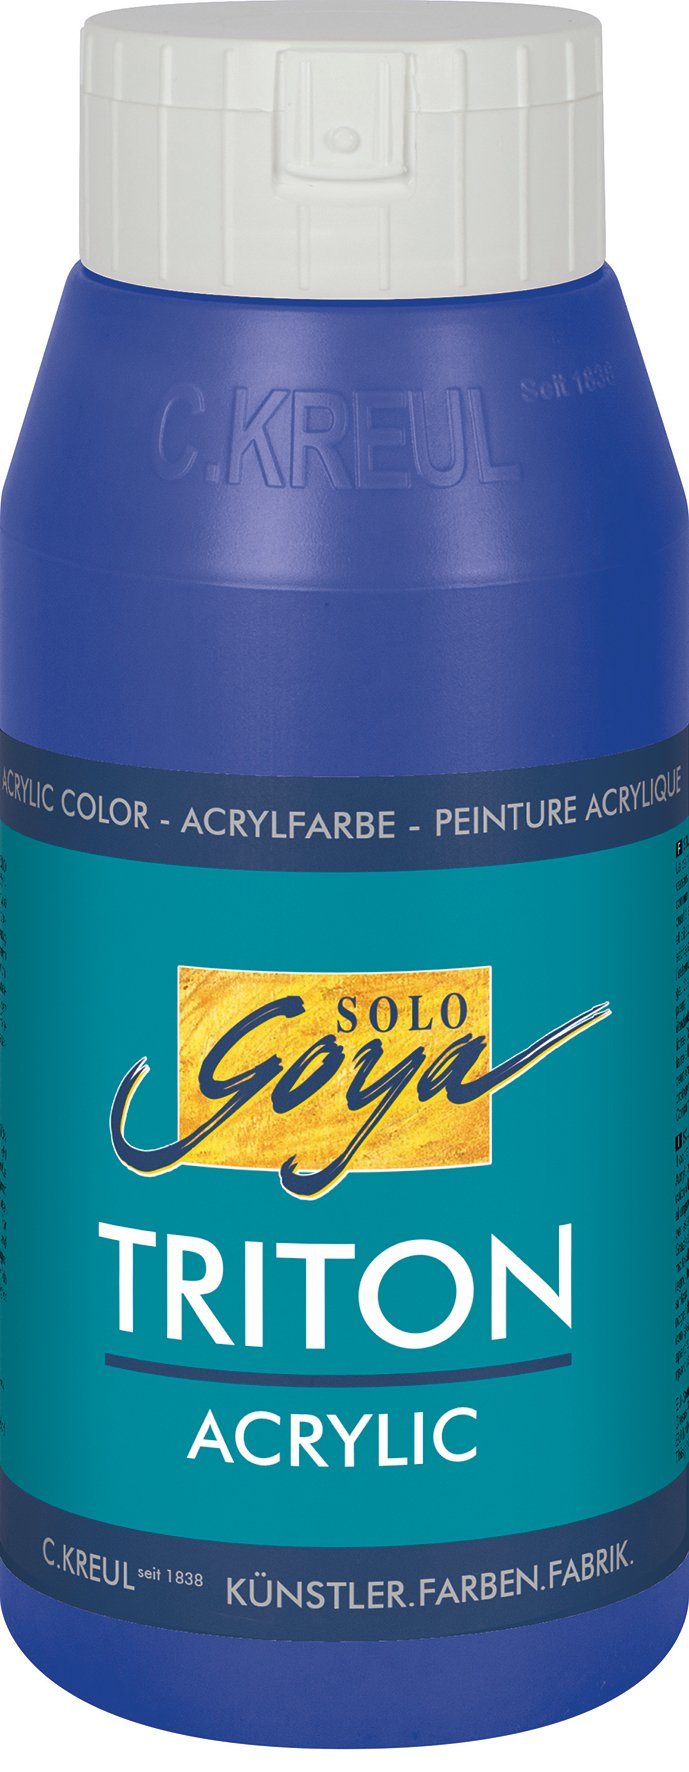 Kreul Acrylfarbe Solo Goya Triton Acrylic, 750 ml Ultramarinblau